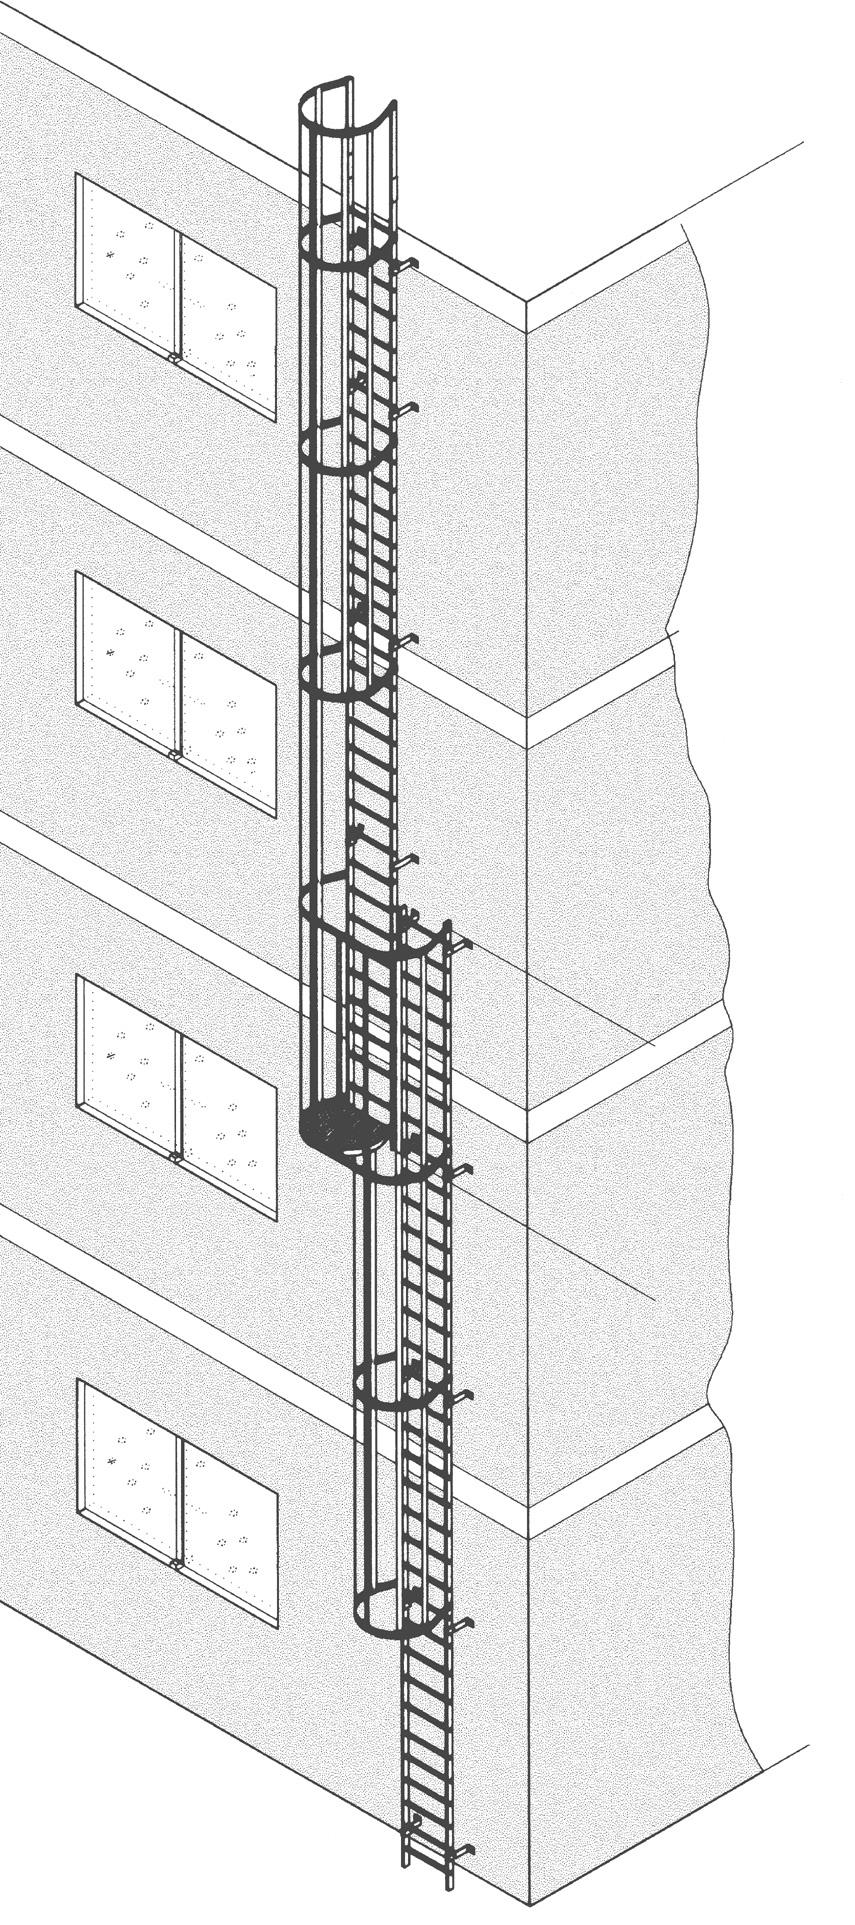 Ortsfeste Steigleitern Mehrzügige Steigleiter ( größer 0,00 m) Bei Steigleiteranlagen mit Rückenschutzkorb darf nach UVV jeder Leiternzug max.